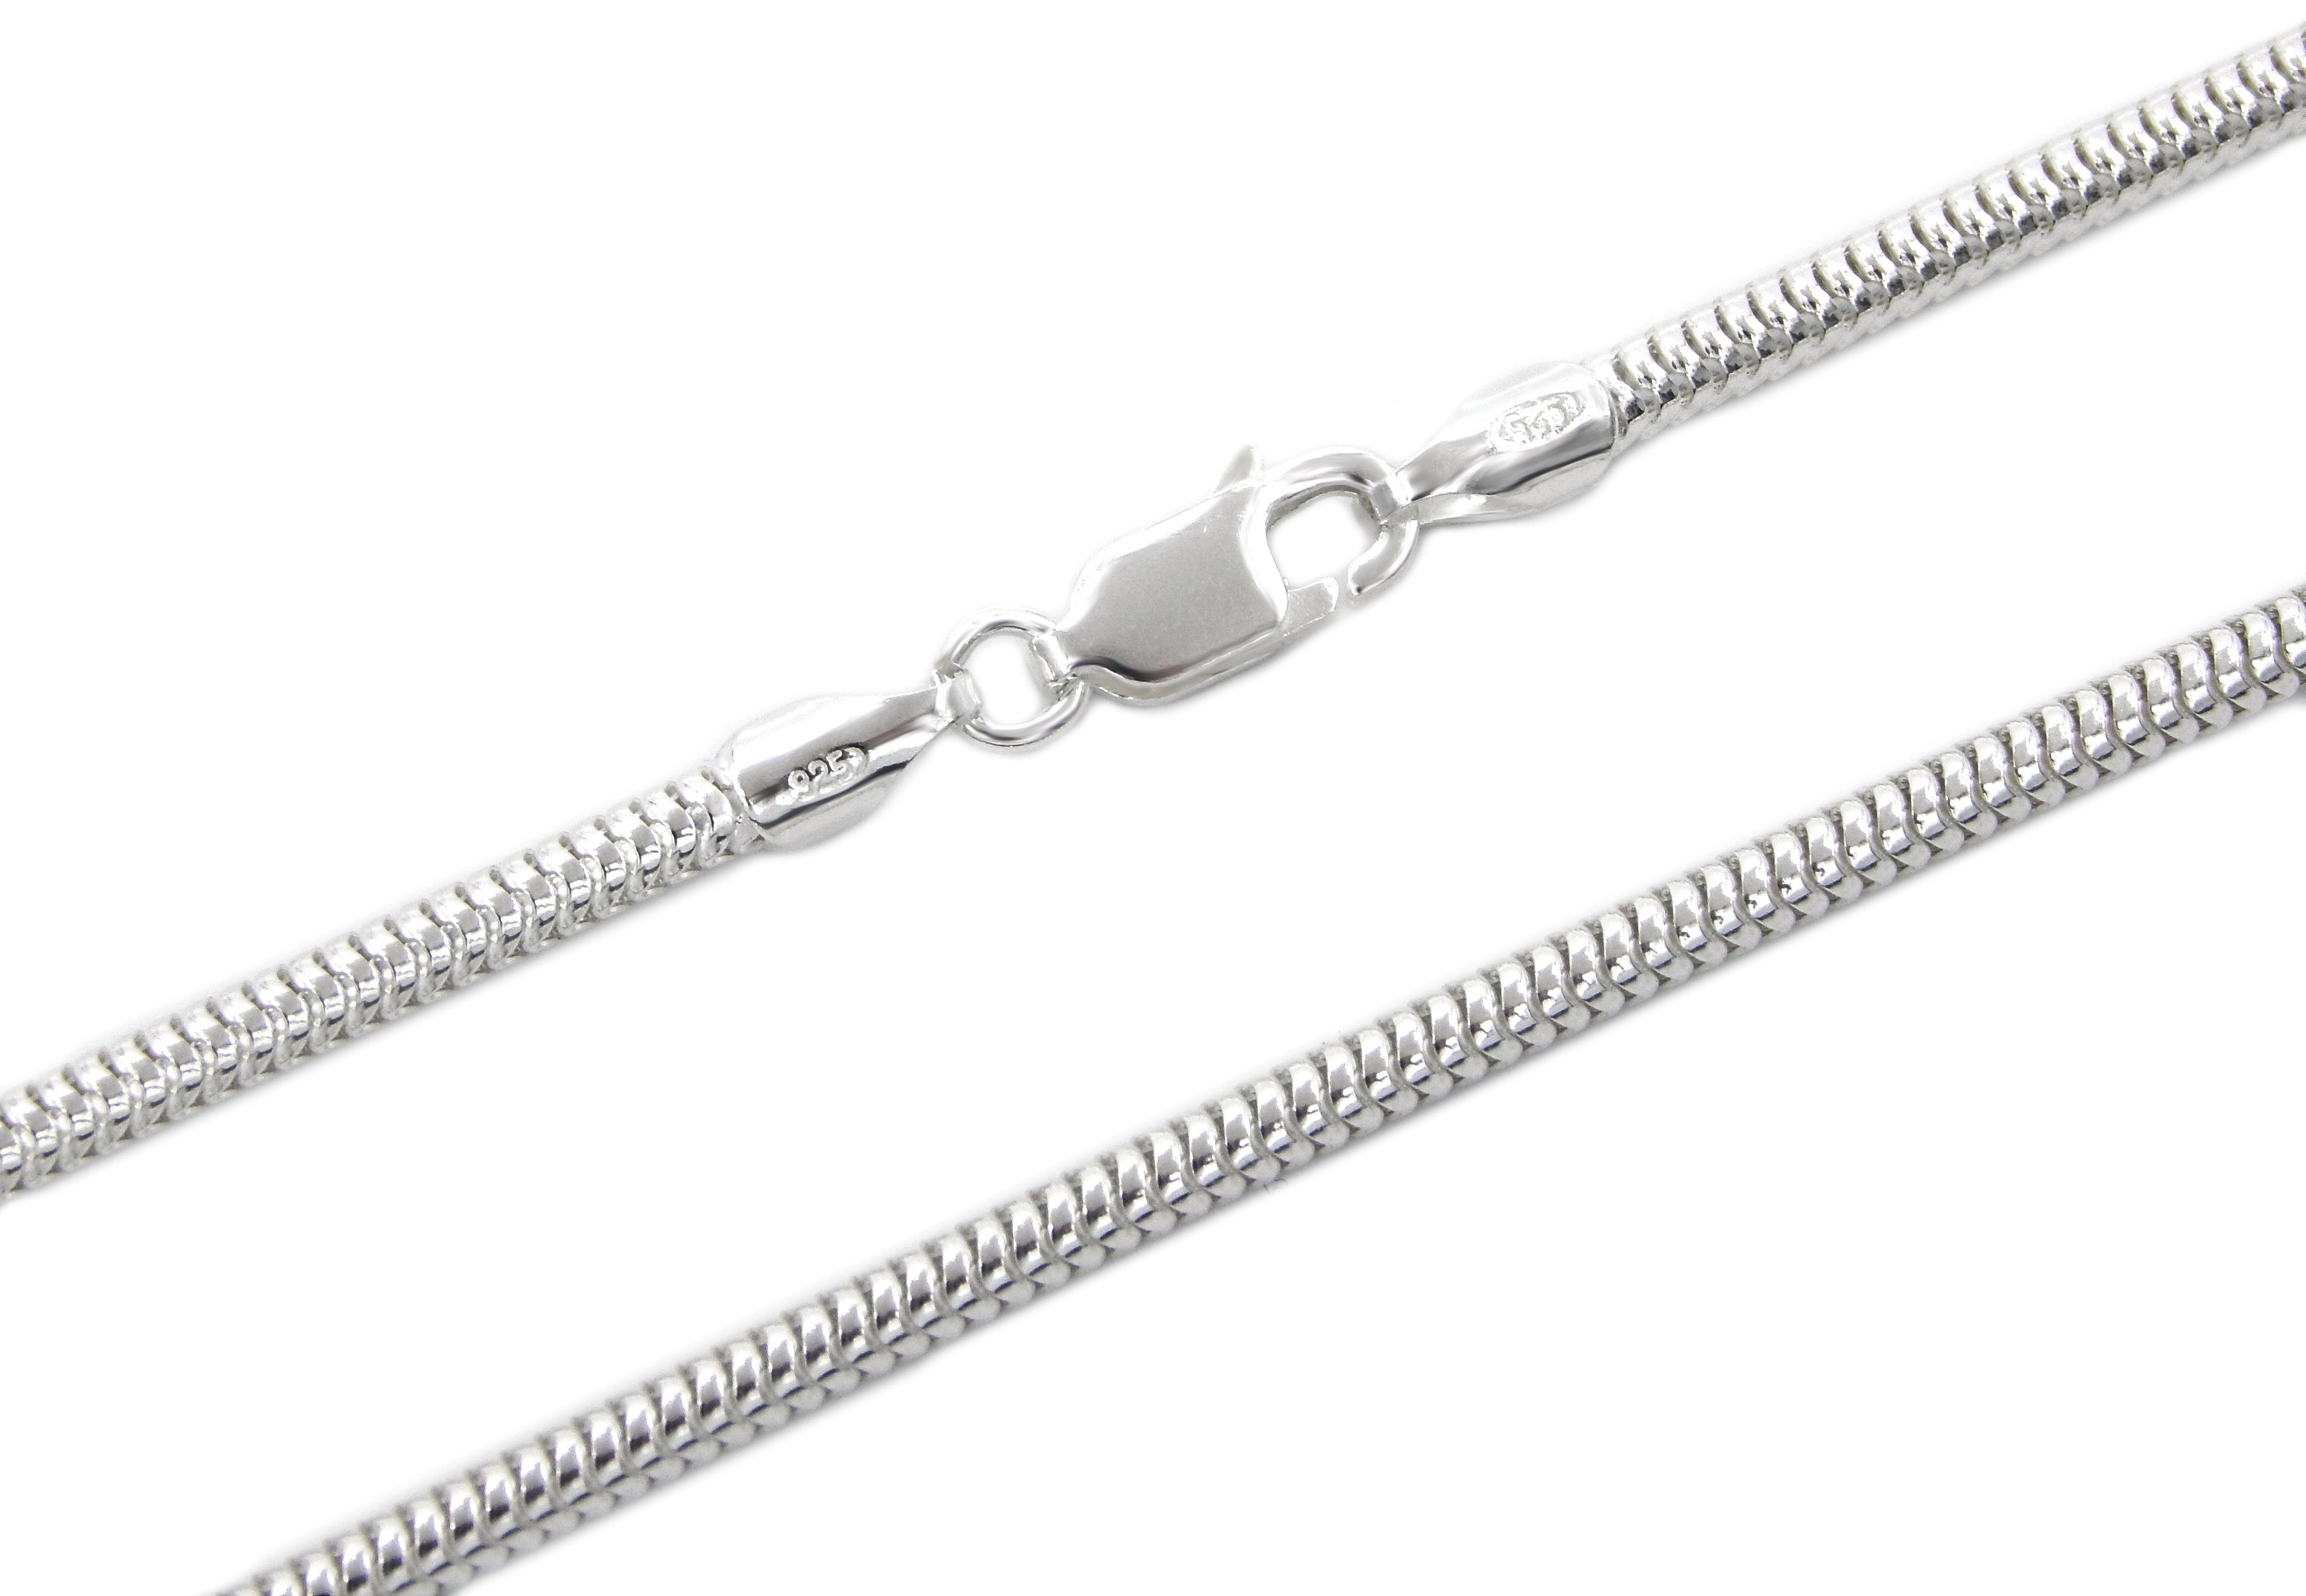 Kauf-mich-weg by Bella T Silberkette Schlangenkette 925 Sterling Silber 2,5mm breit, Länge wählbar 50 - 55cm | Silberketten